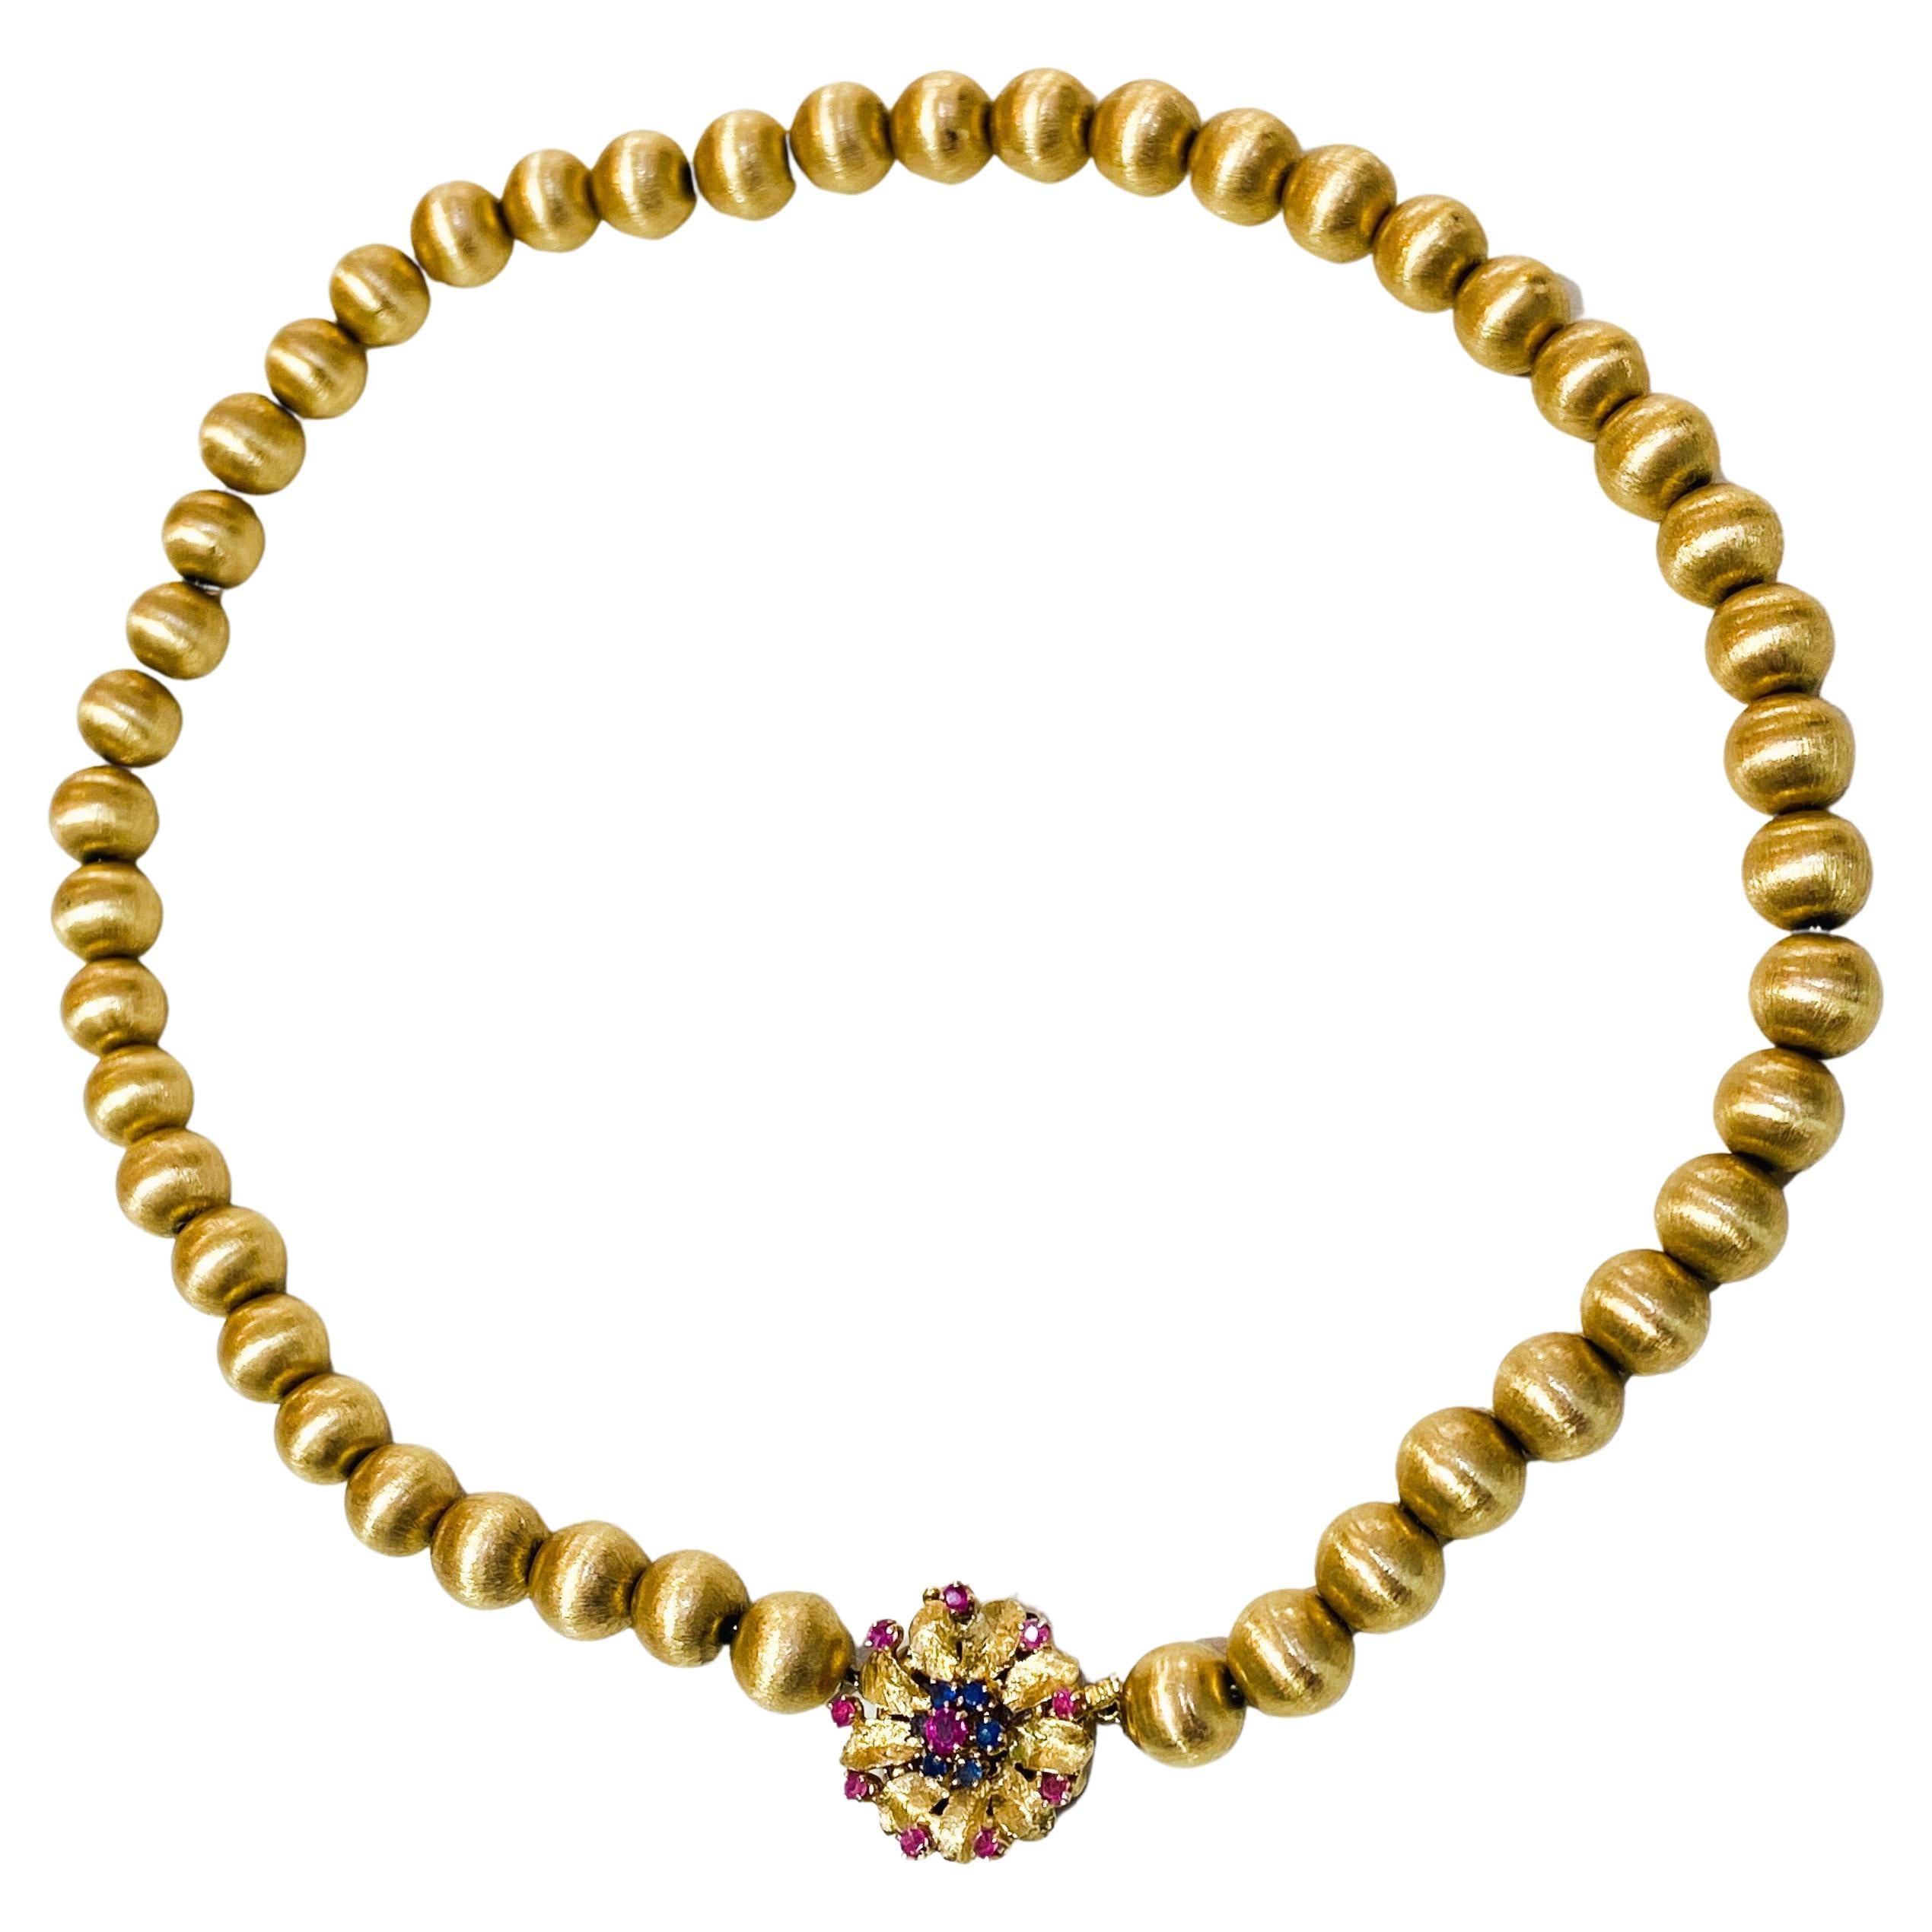 Nachlass Gold Perlen 9mm Rubin Saphir Verschluss in 14K Gelbgold gebürstete Perlen